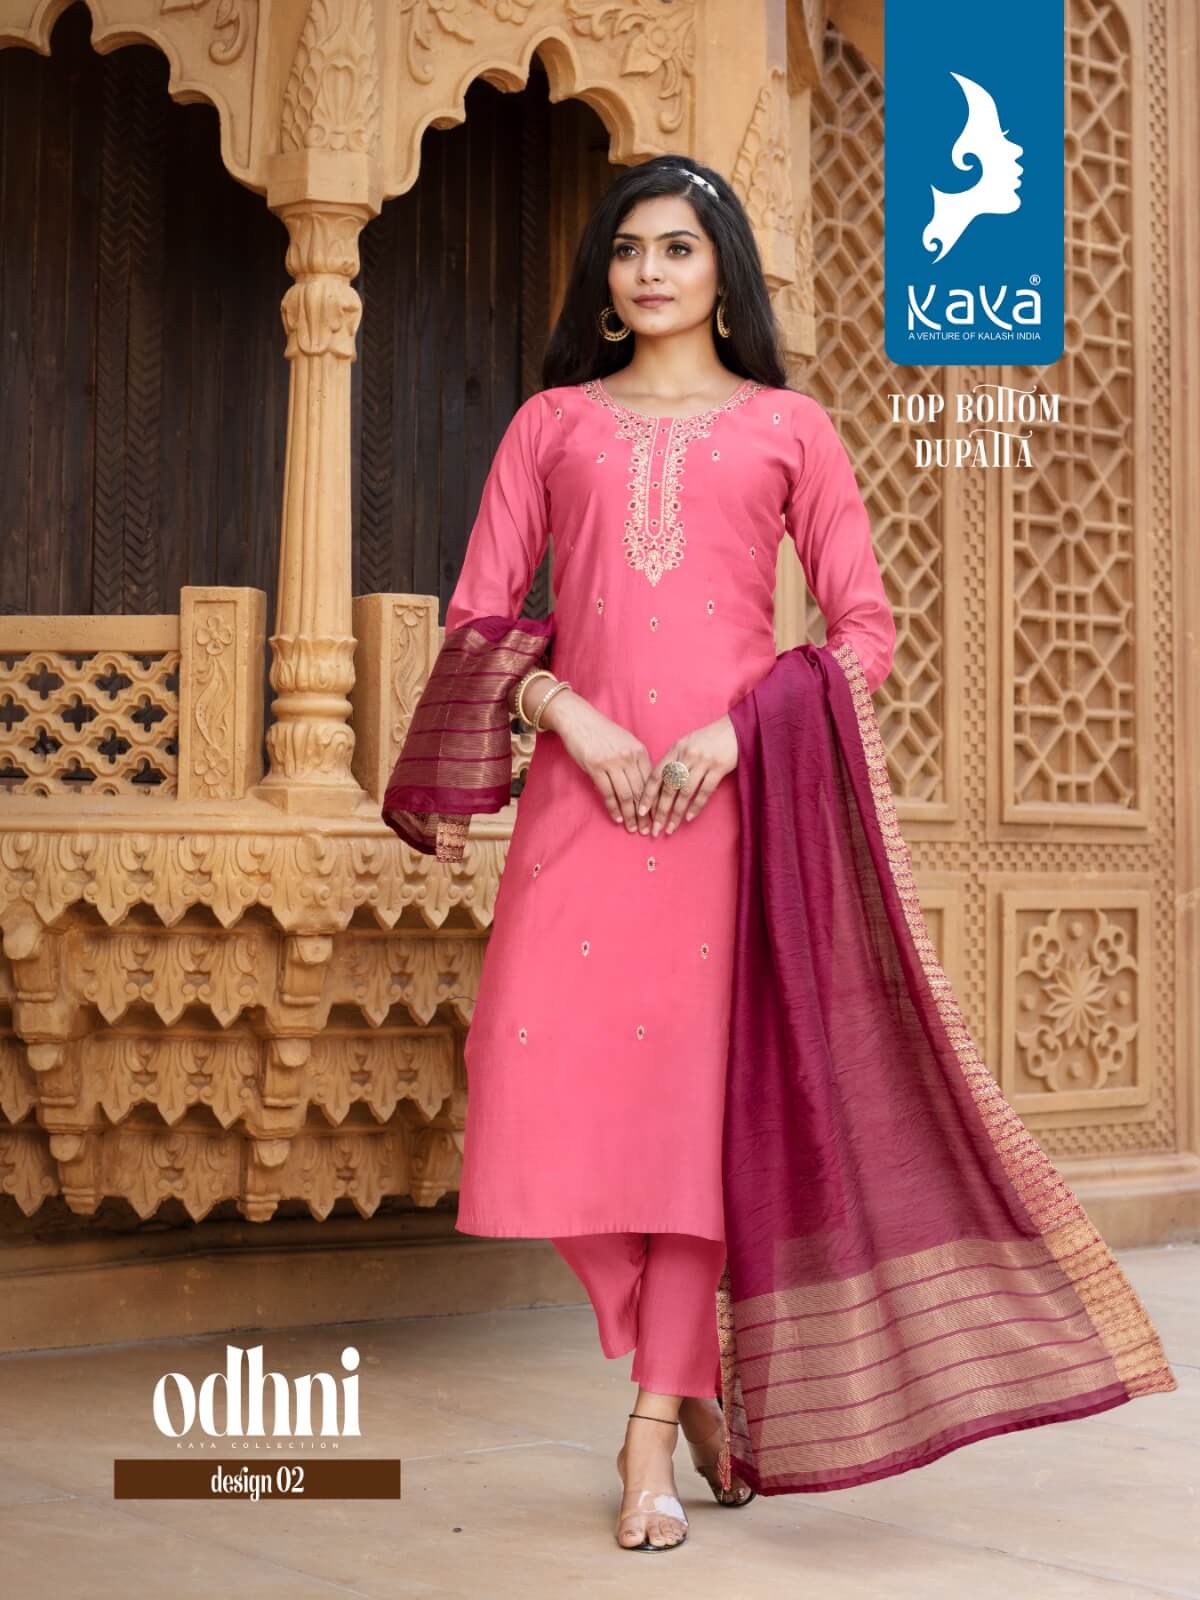 Kaya Odhani Designer Wedding Party Salwar Suits Catalog collection 1